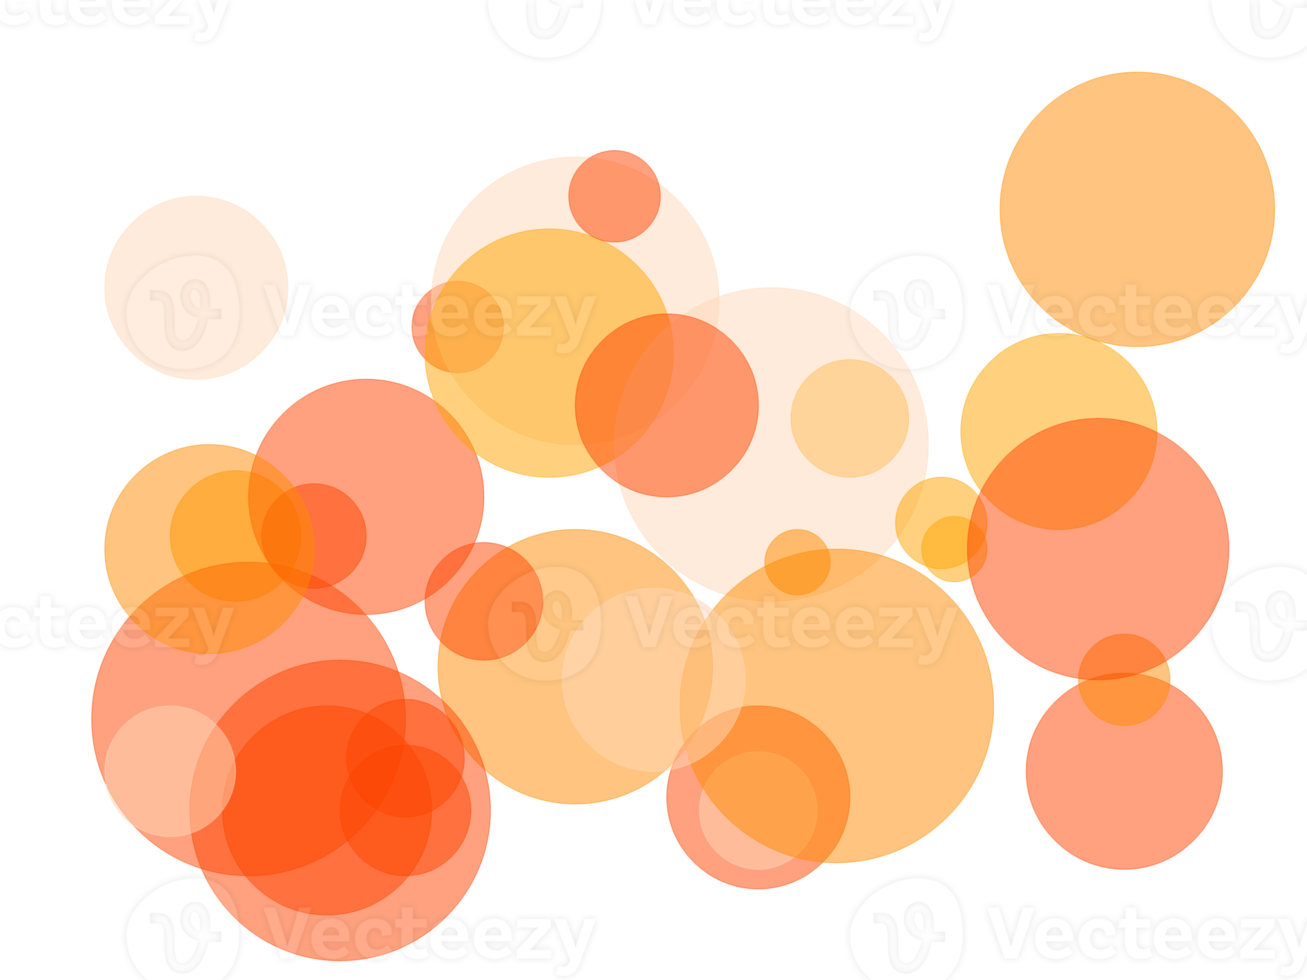 cerchi arancioni astratti sovrapposti con sfondo png trasparente